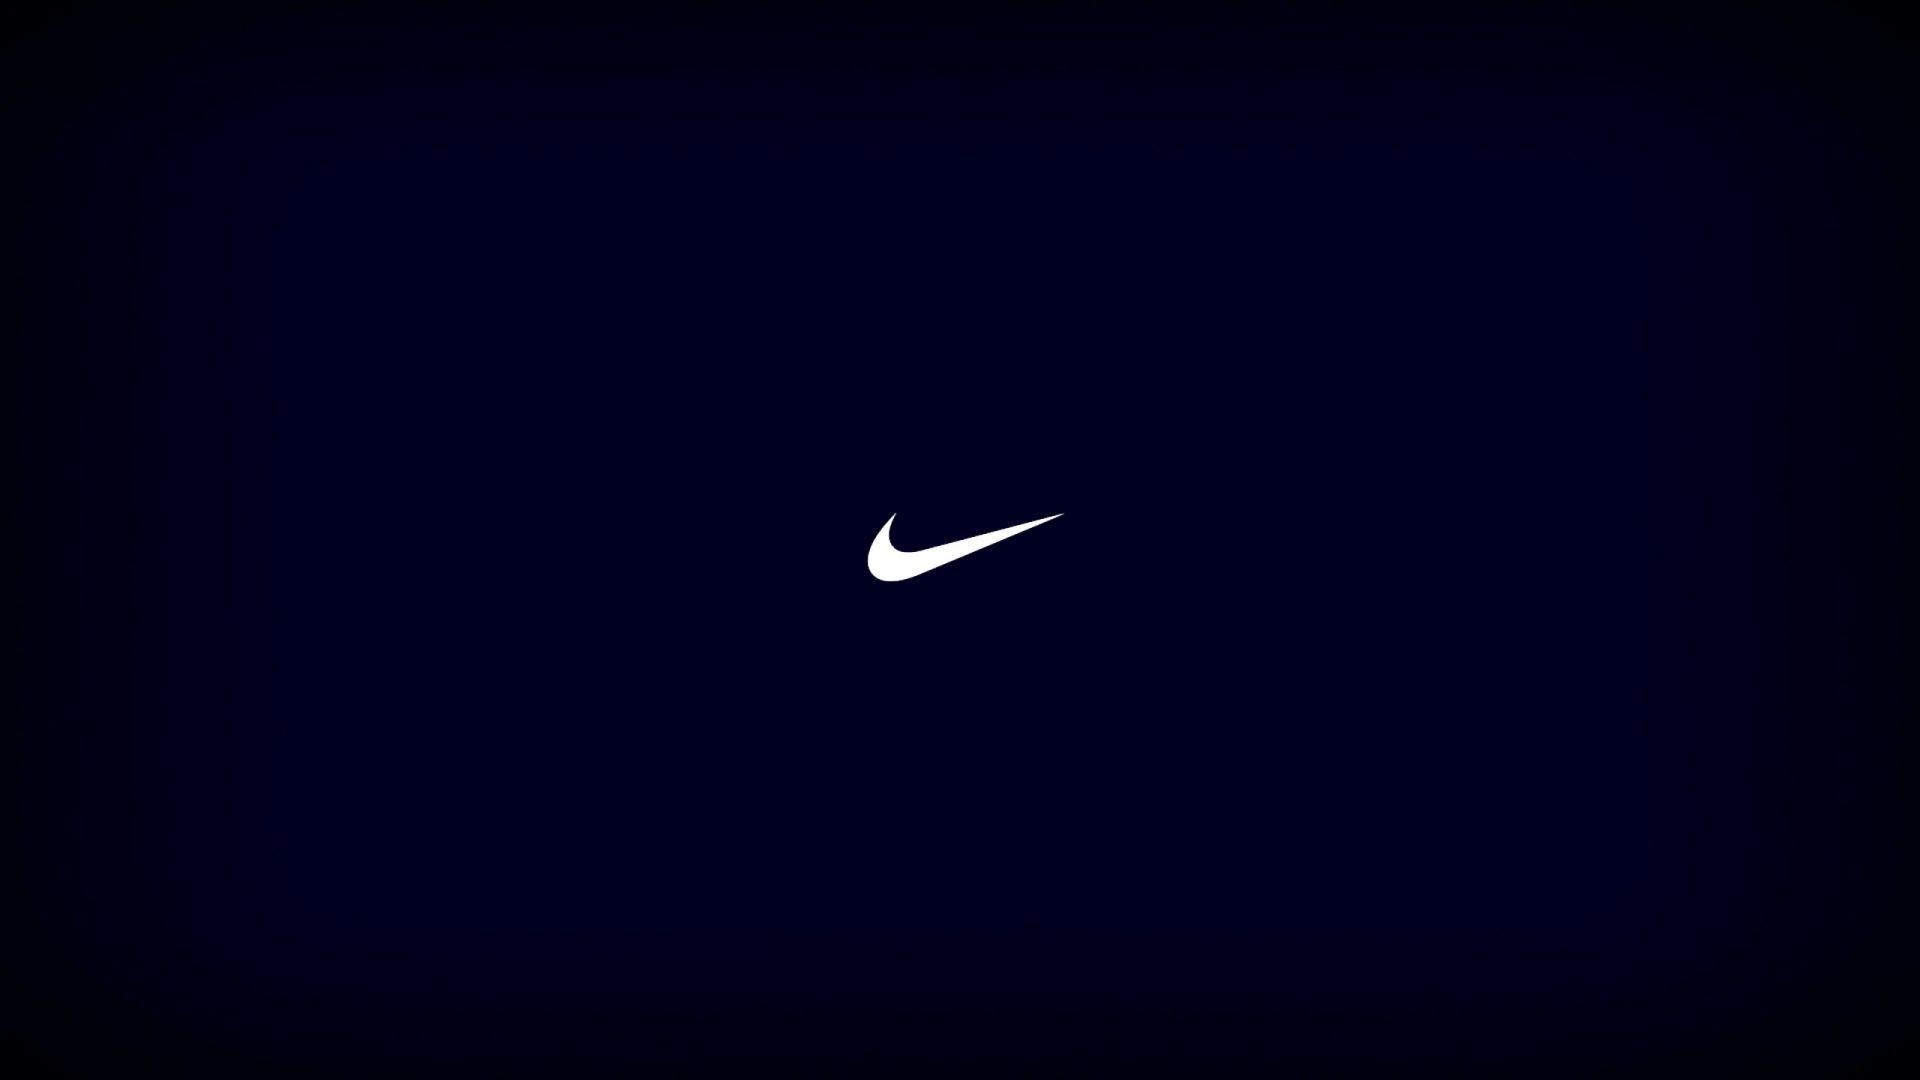 Blue Nike Logo Black Background